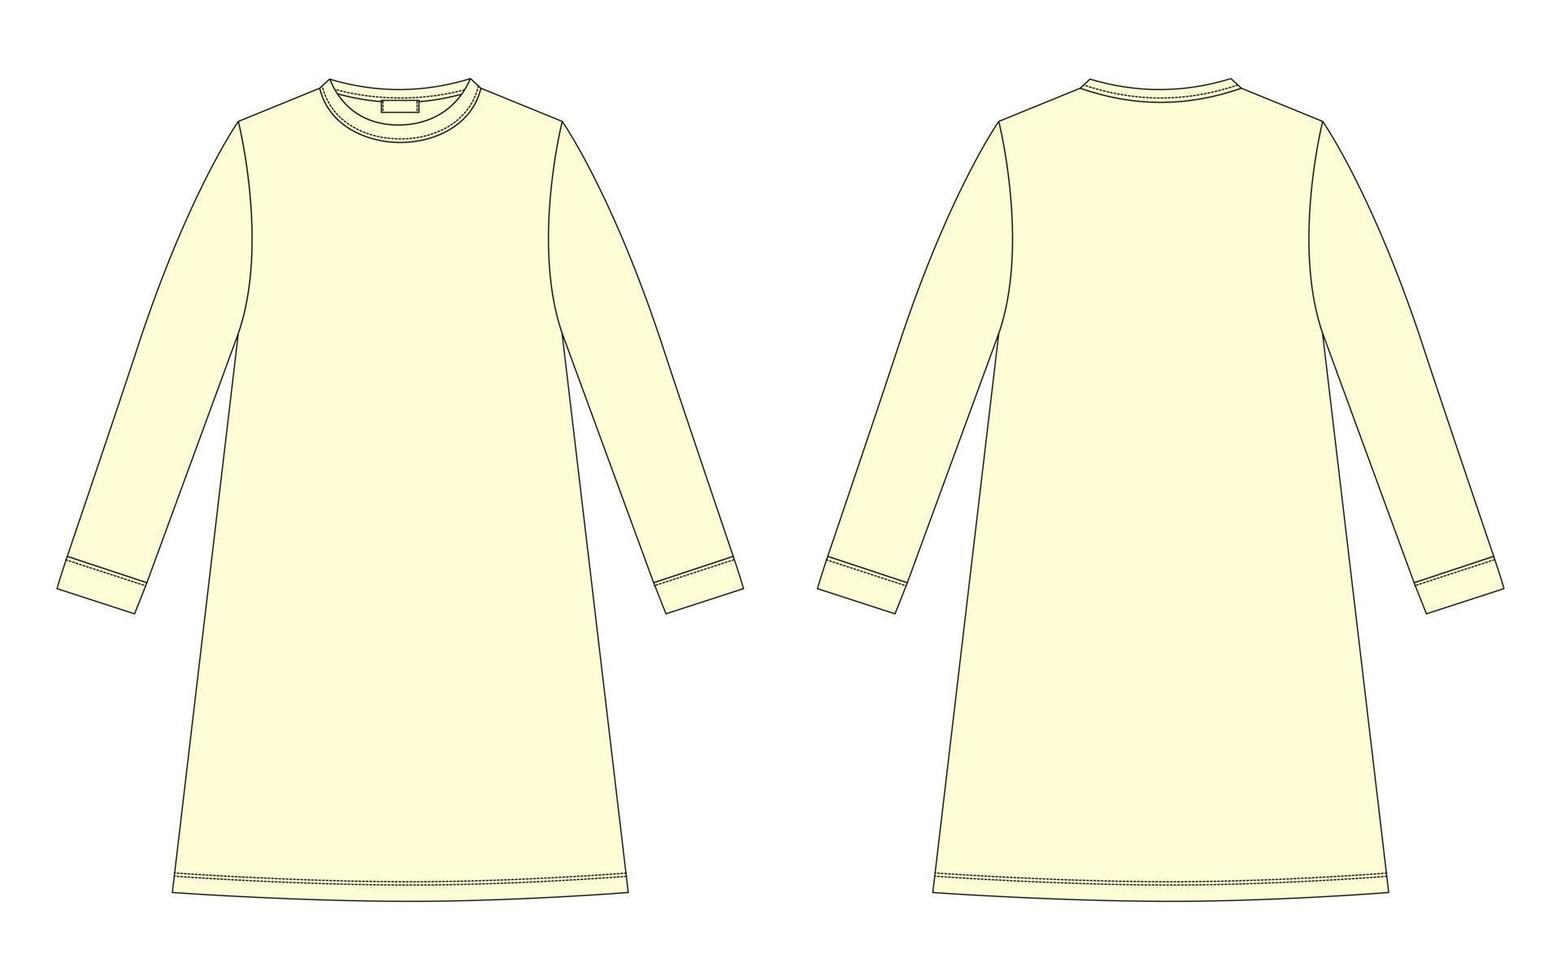 croqui técnico de camisola. camisa de algodão para crianças. cor amarela. vetor